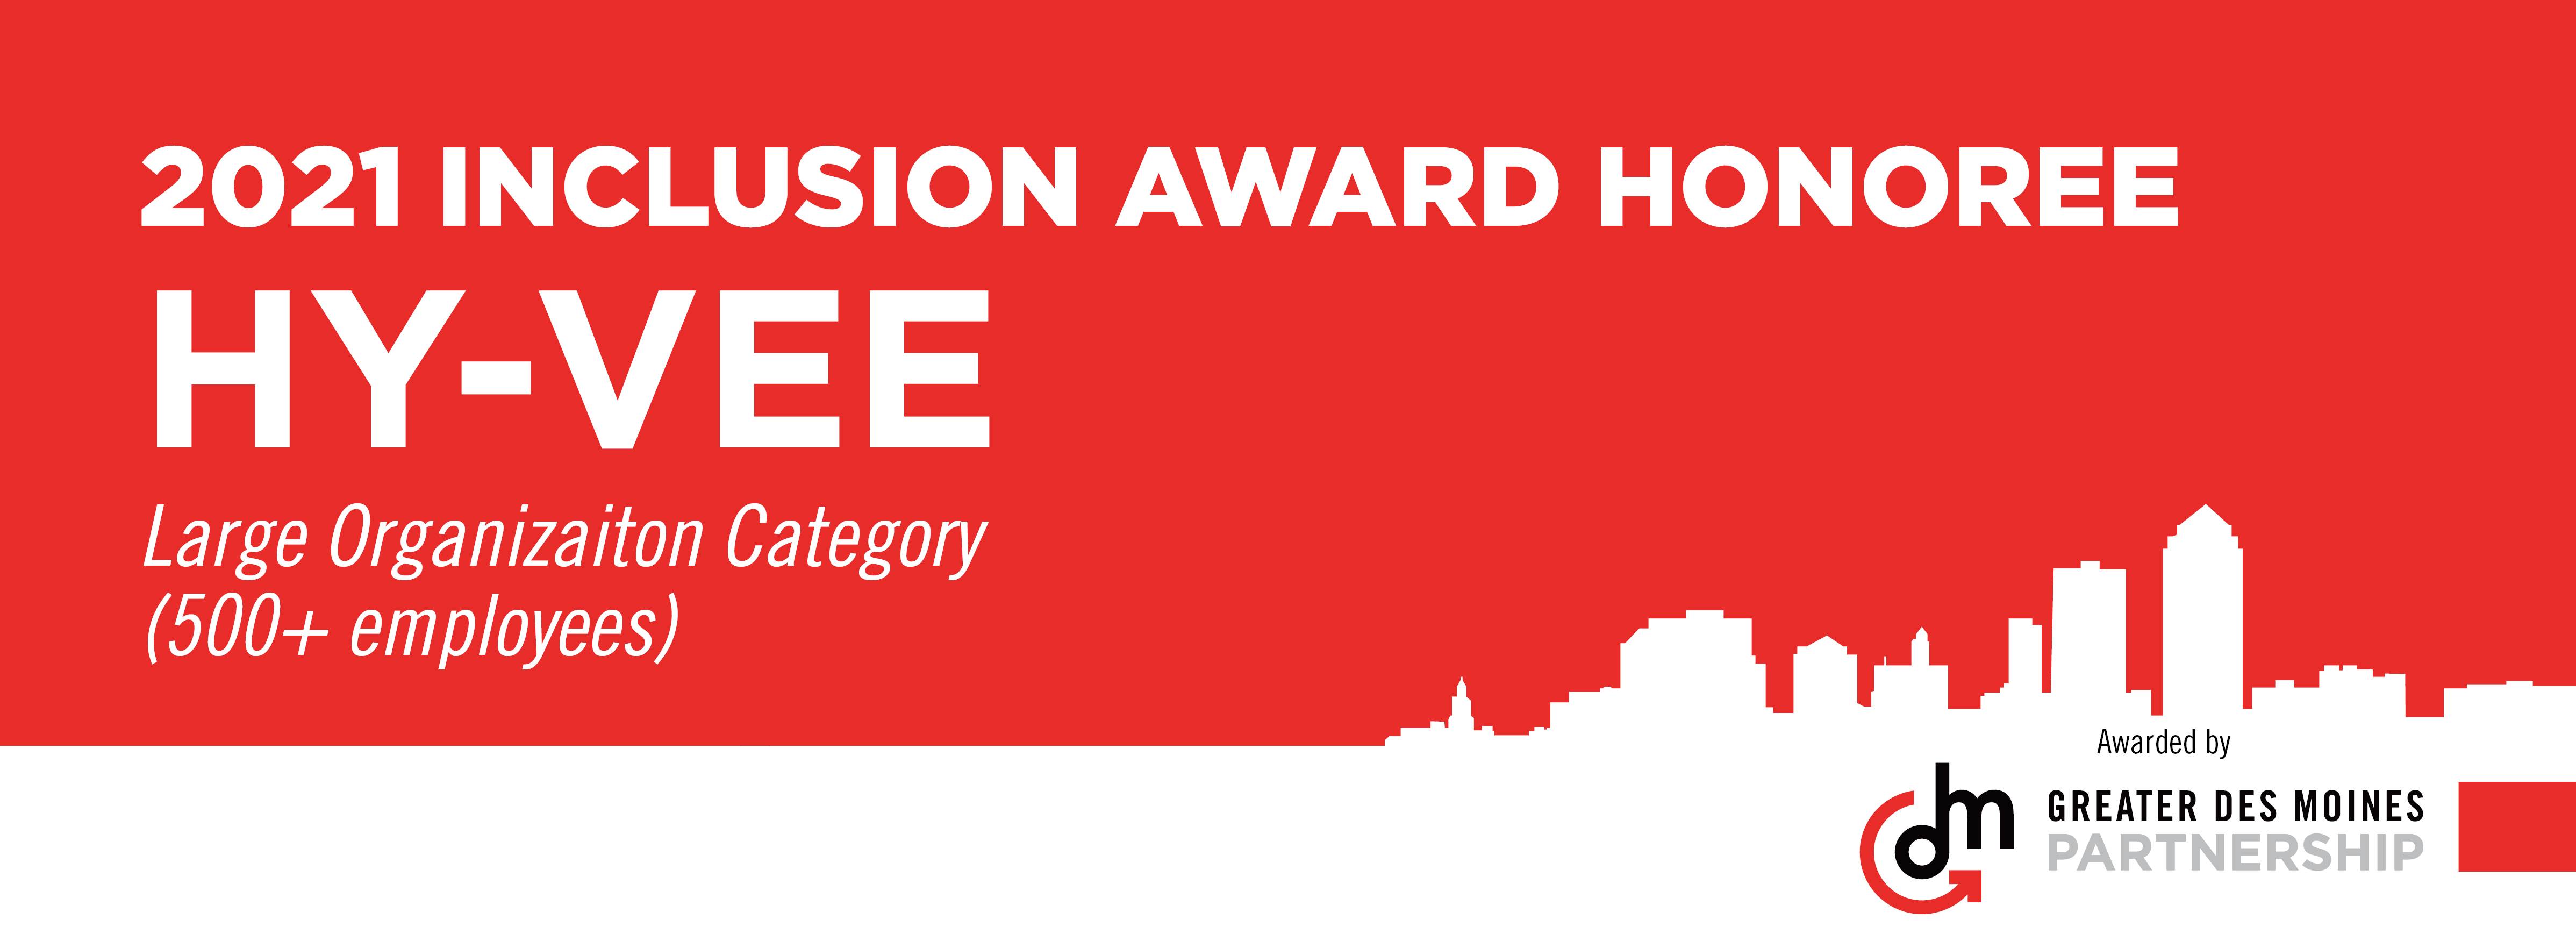 Hy-Vee Inclusion Award